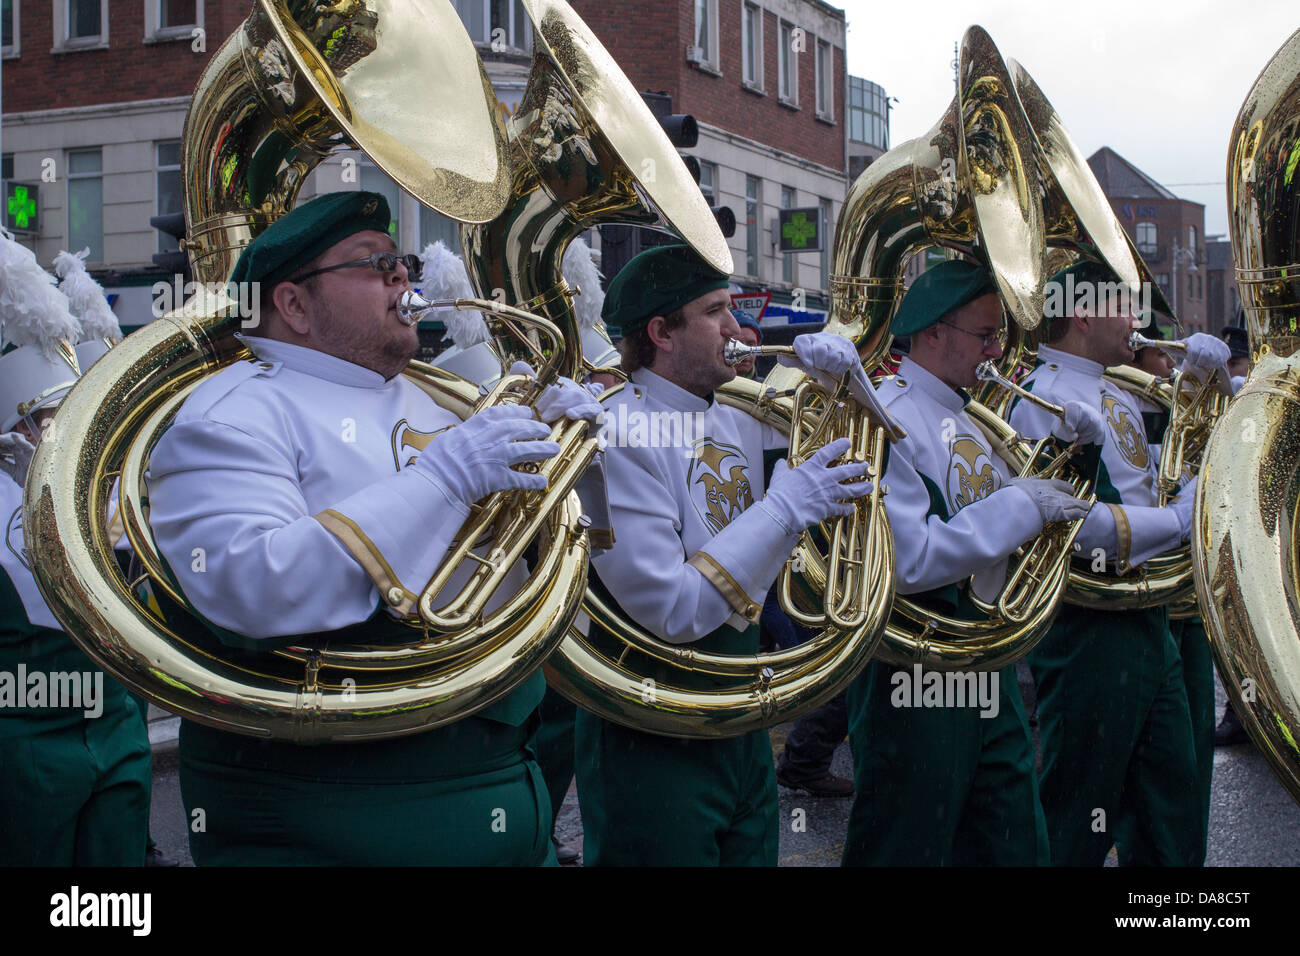 St. Patrick's Parade, Dublin, Ireland, 17th of March 2013. Stock Photo